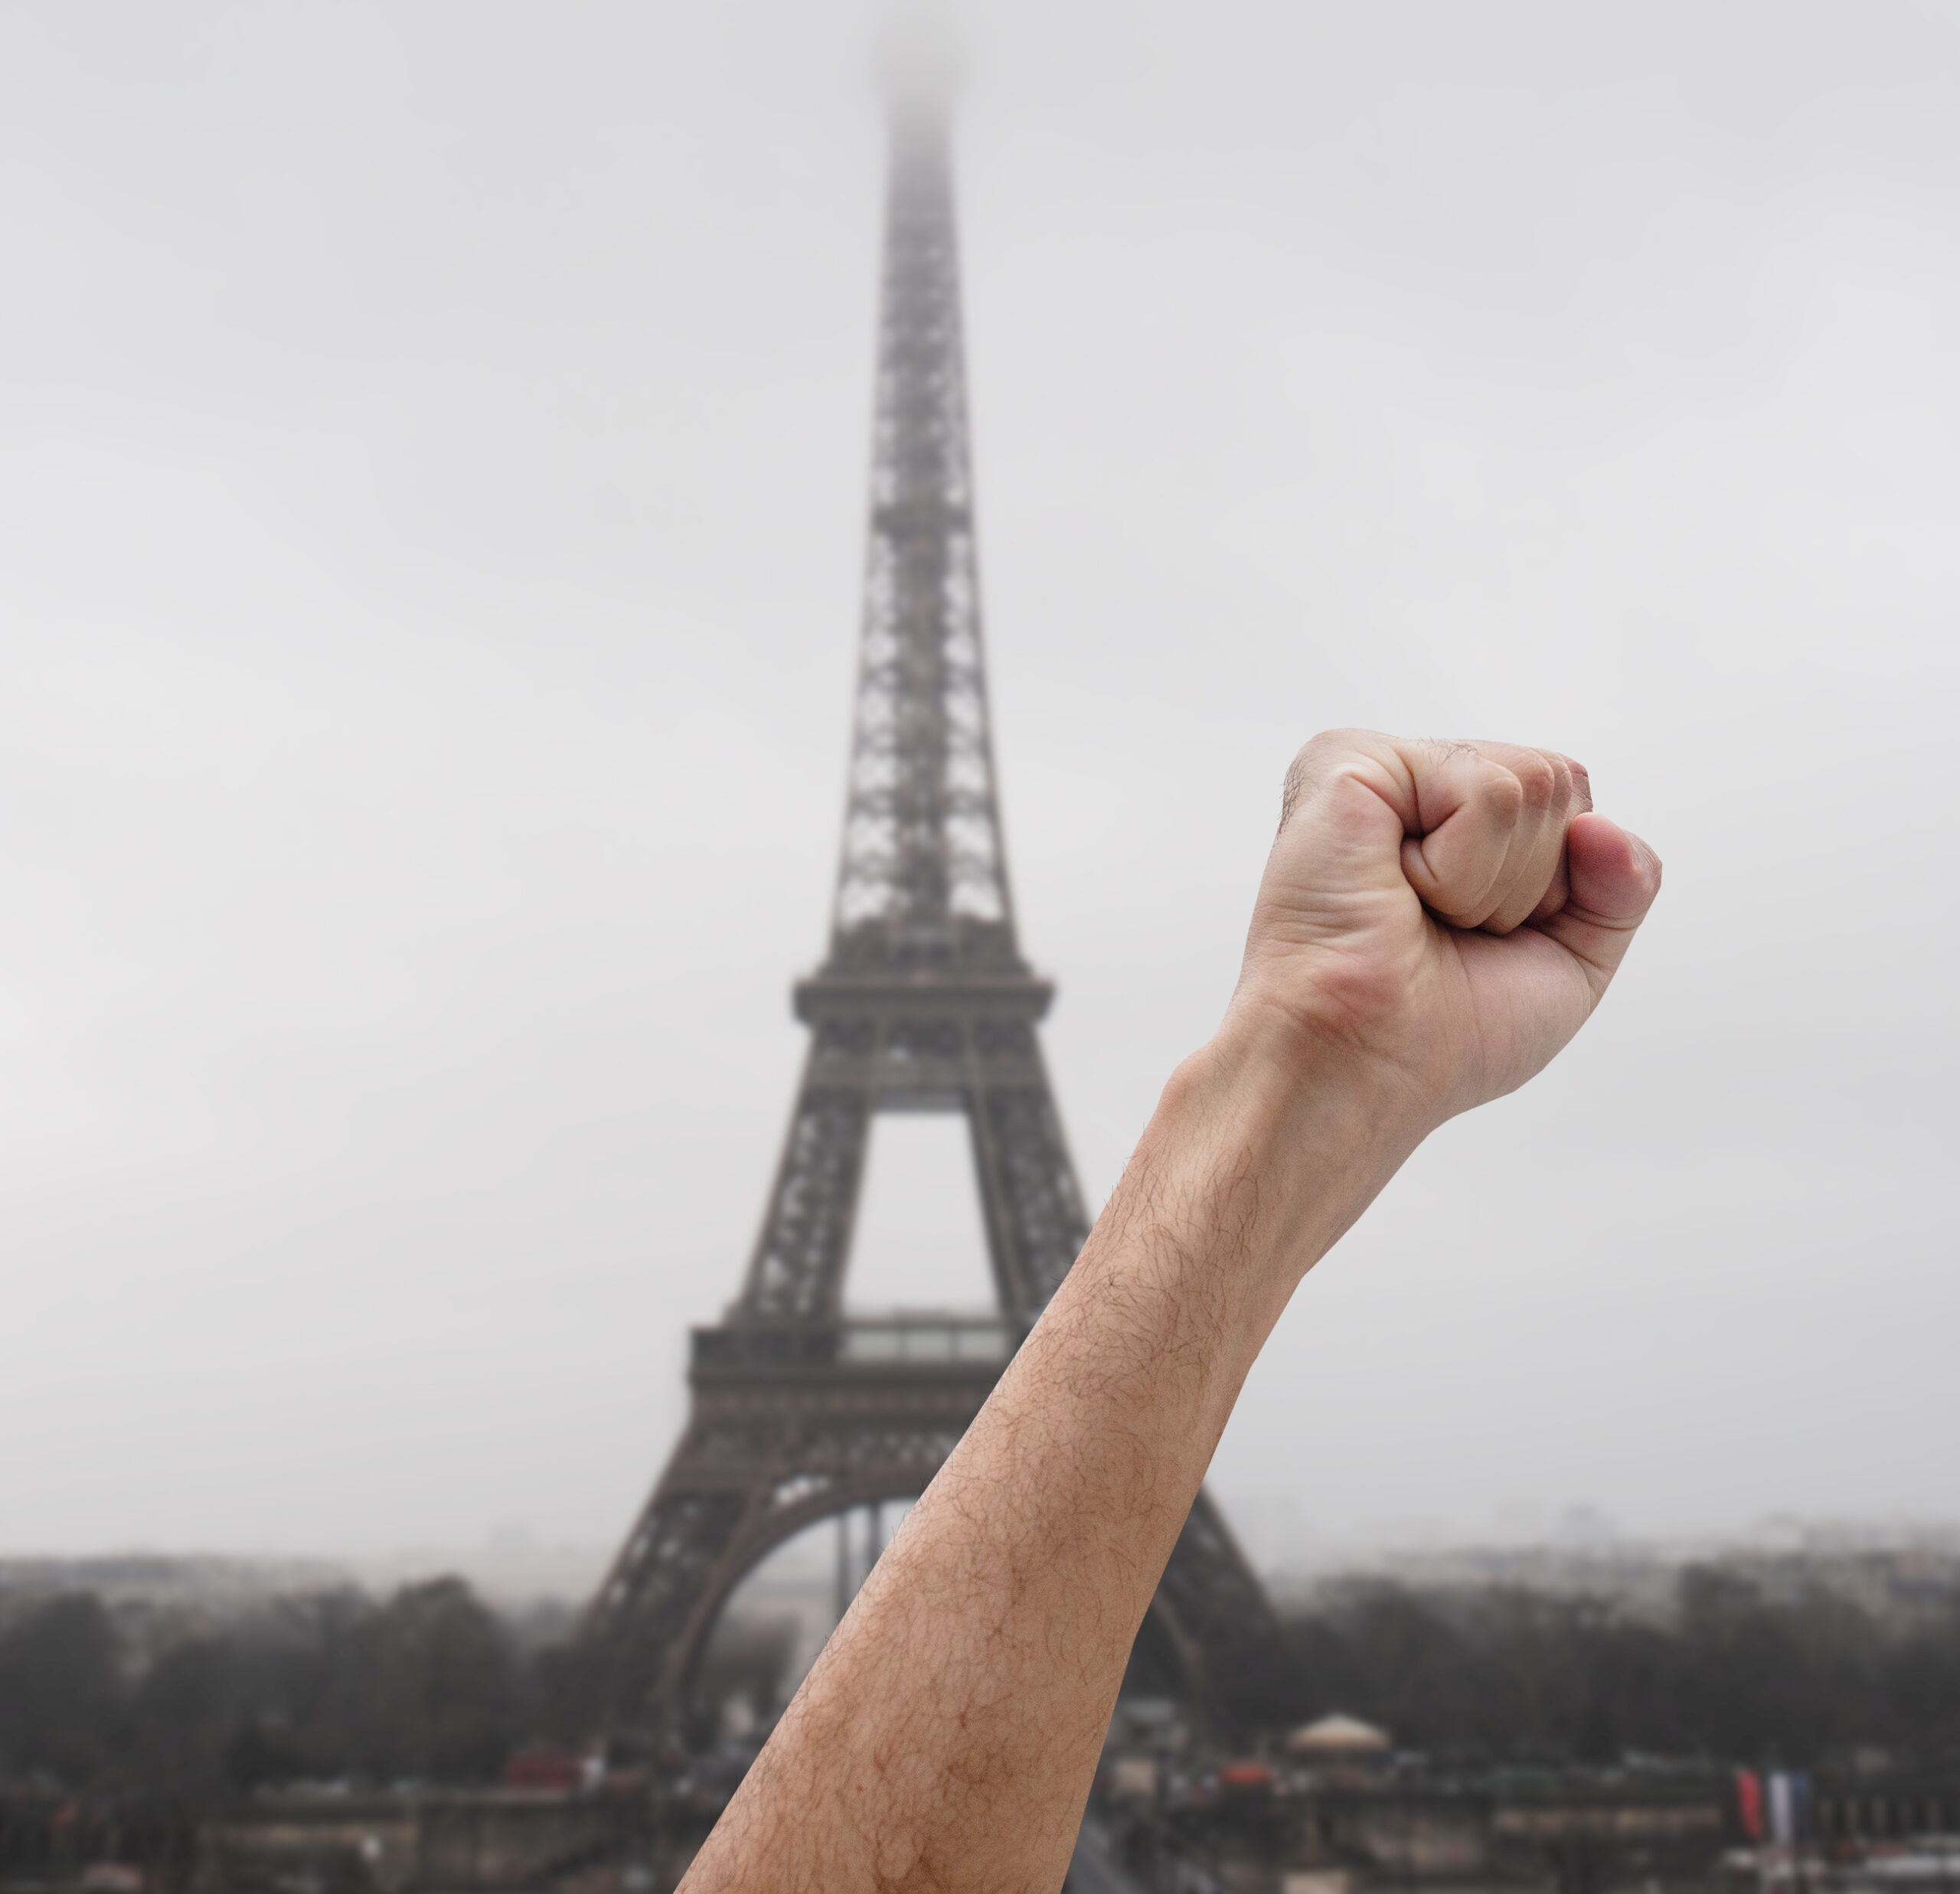 Eine im Protest erhobene Faust vor dem, im Hintergrund sichtbaren, Eiffelturm in Paris.